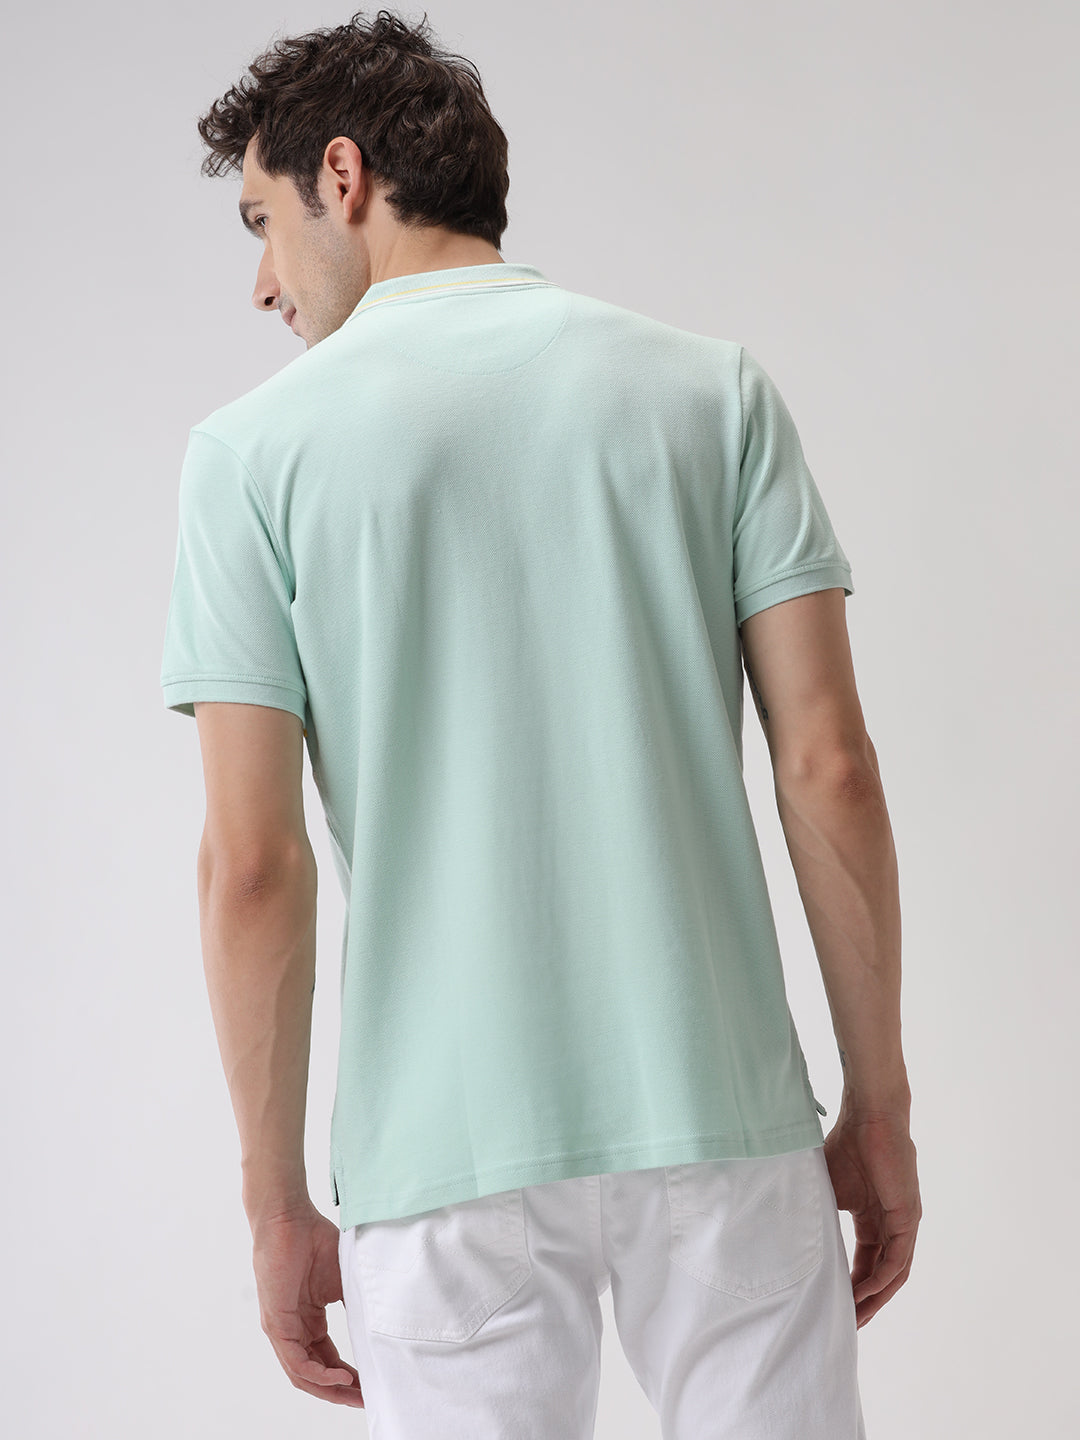 Cut & Sewn Mint Polo T-Shirt